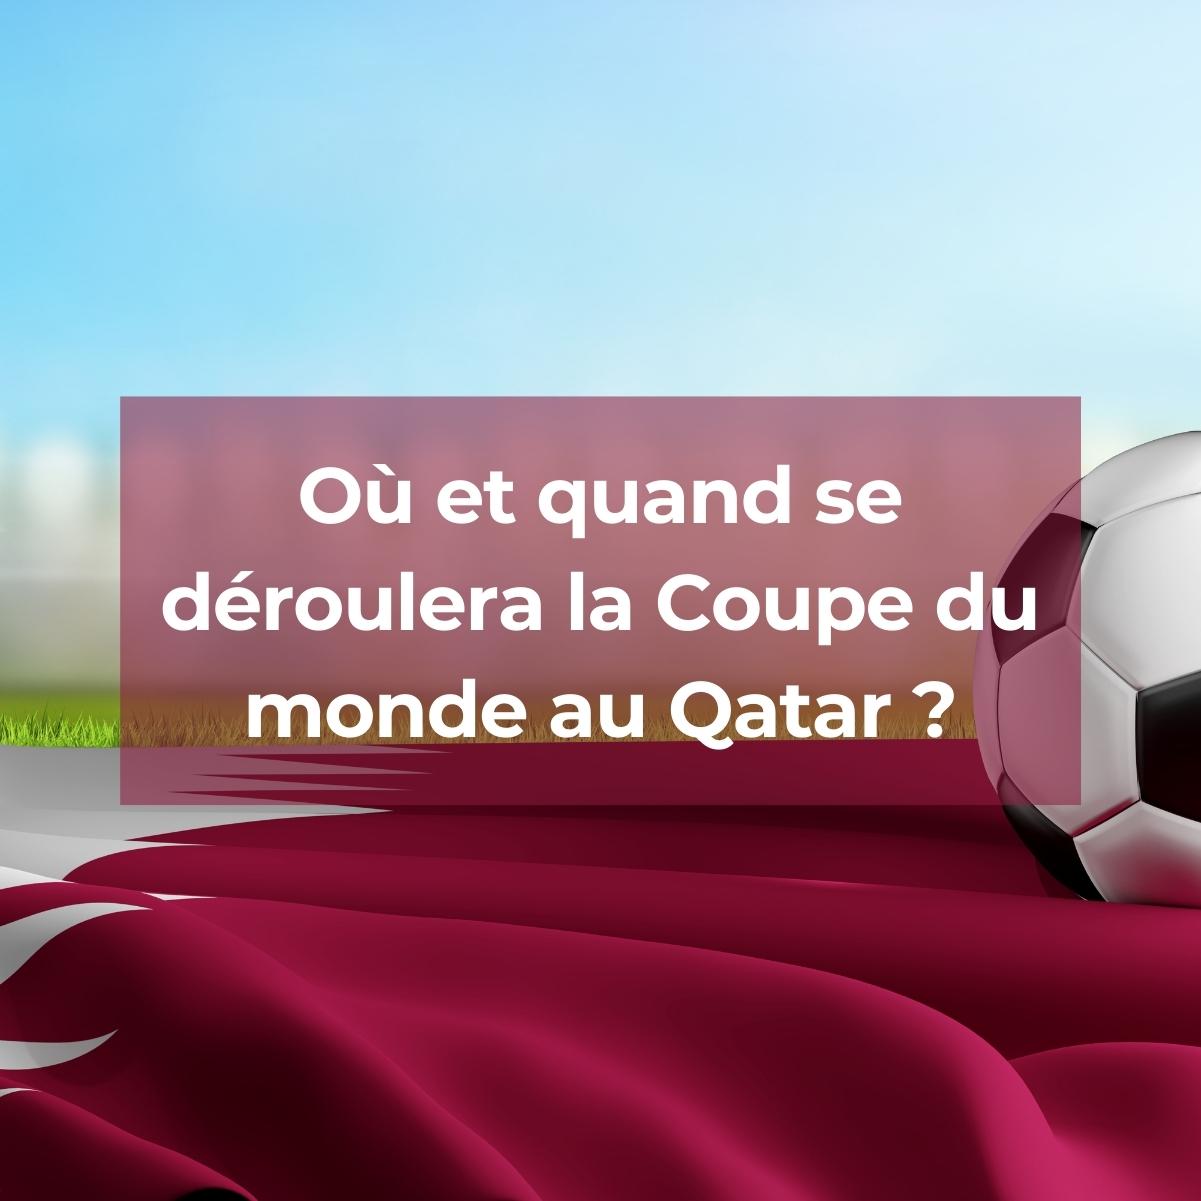 Où et quand se déroulera la Coupe du monde 2022 au Qatar ?